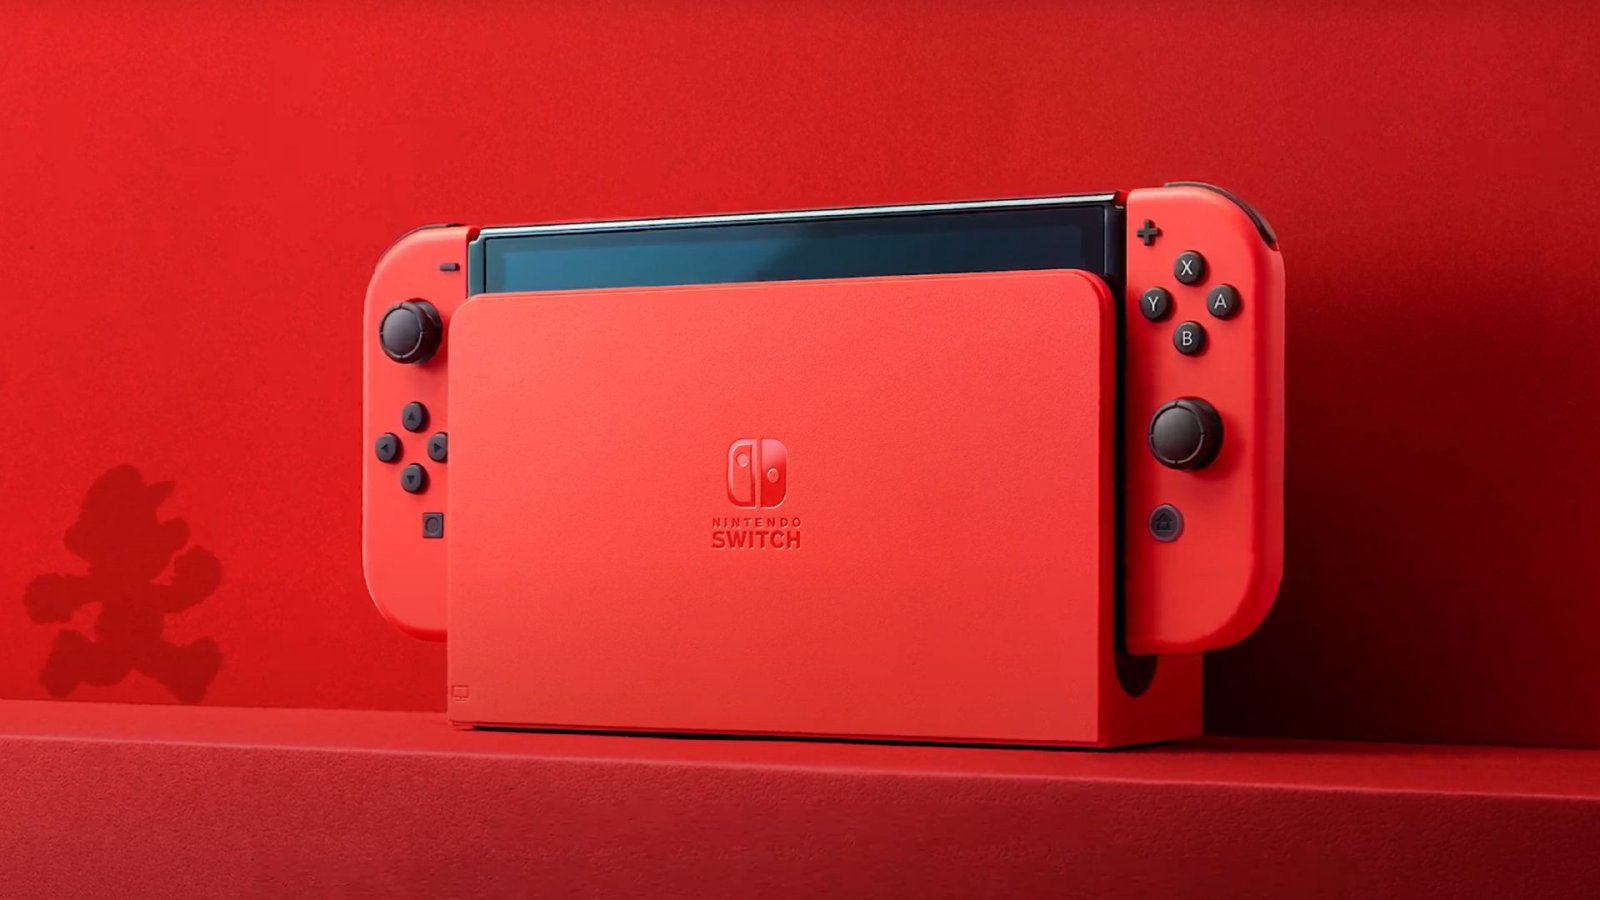 Nintendo Switch modello OLED, edizione speciale Mario (rossa) annunciata ufficialmente